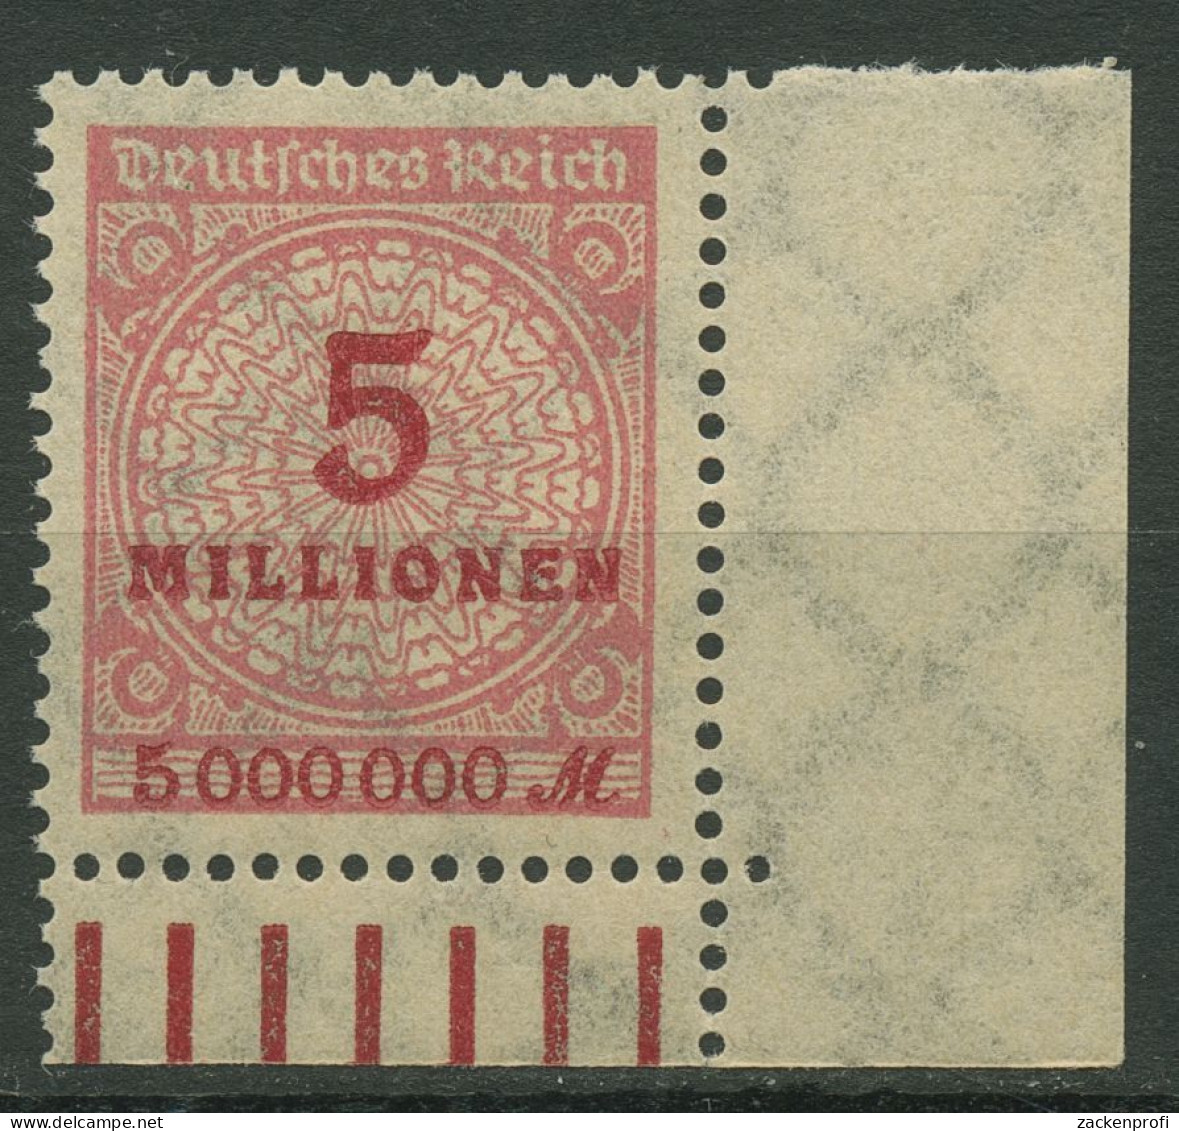 Deutsches Reich Inflation 1923 Korbdeckel Walze 317 AW Ecke Unt. Re. Postfrisch - Nuovi